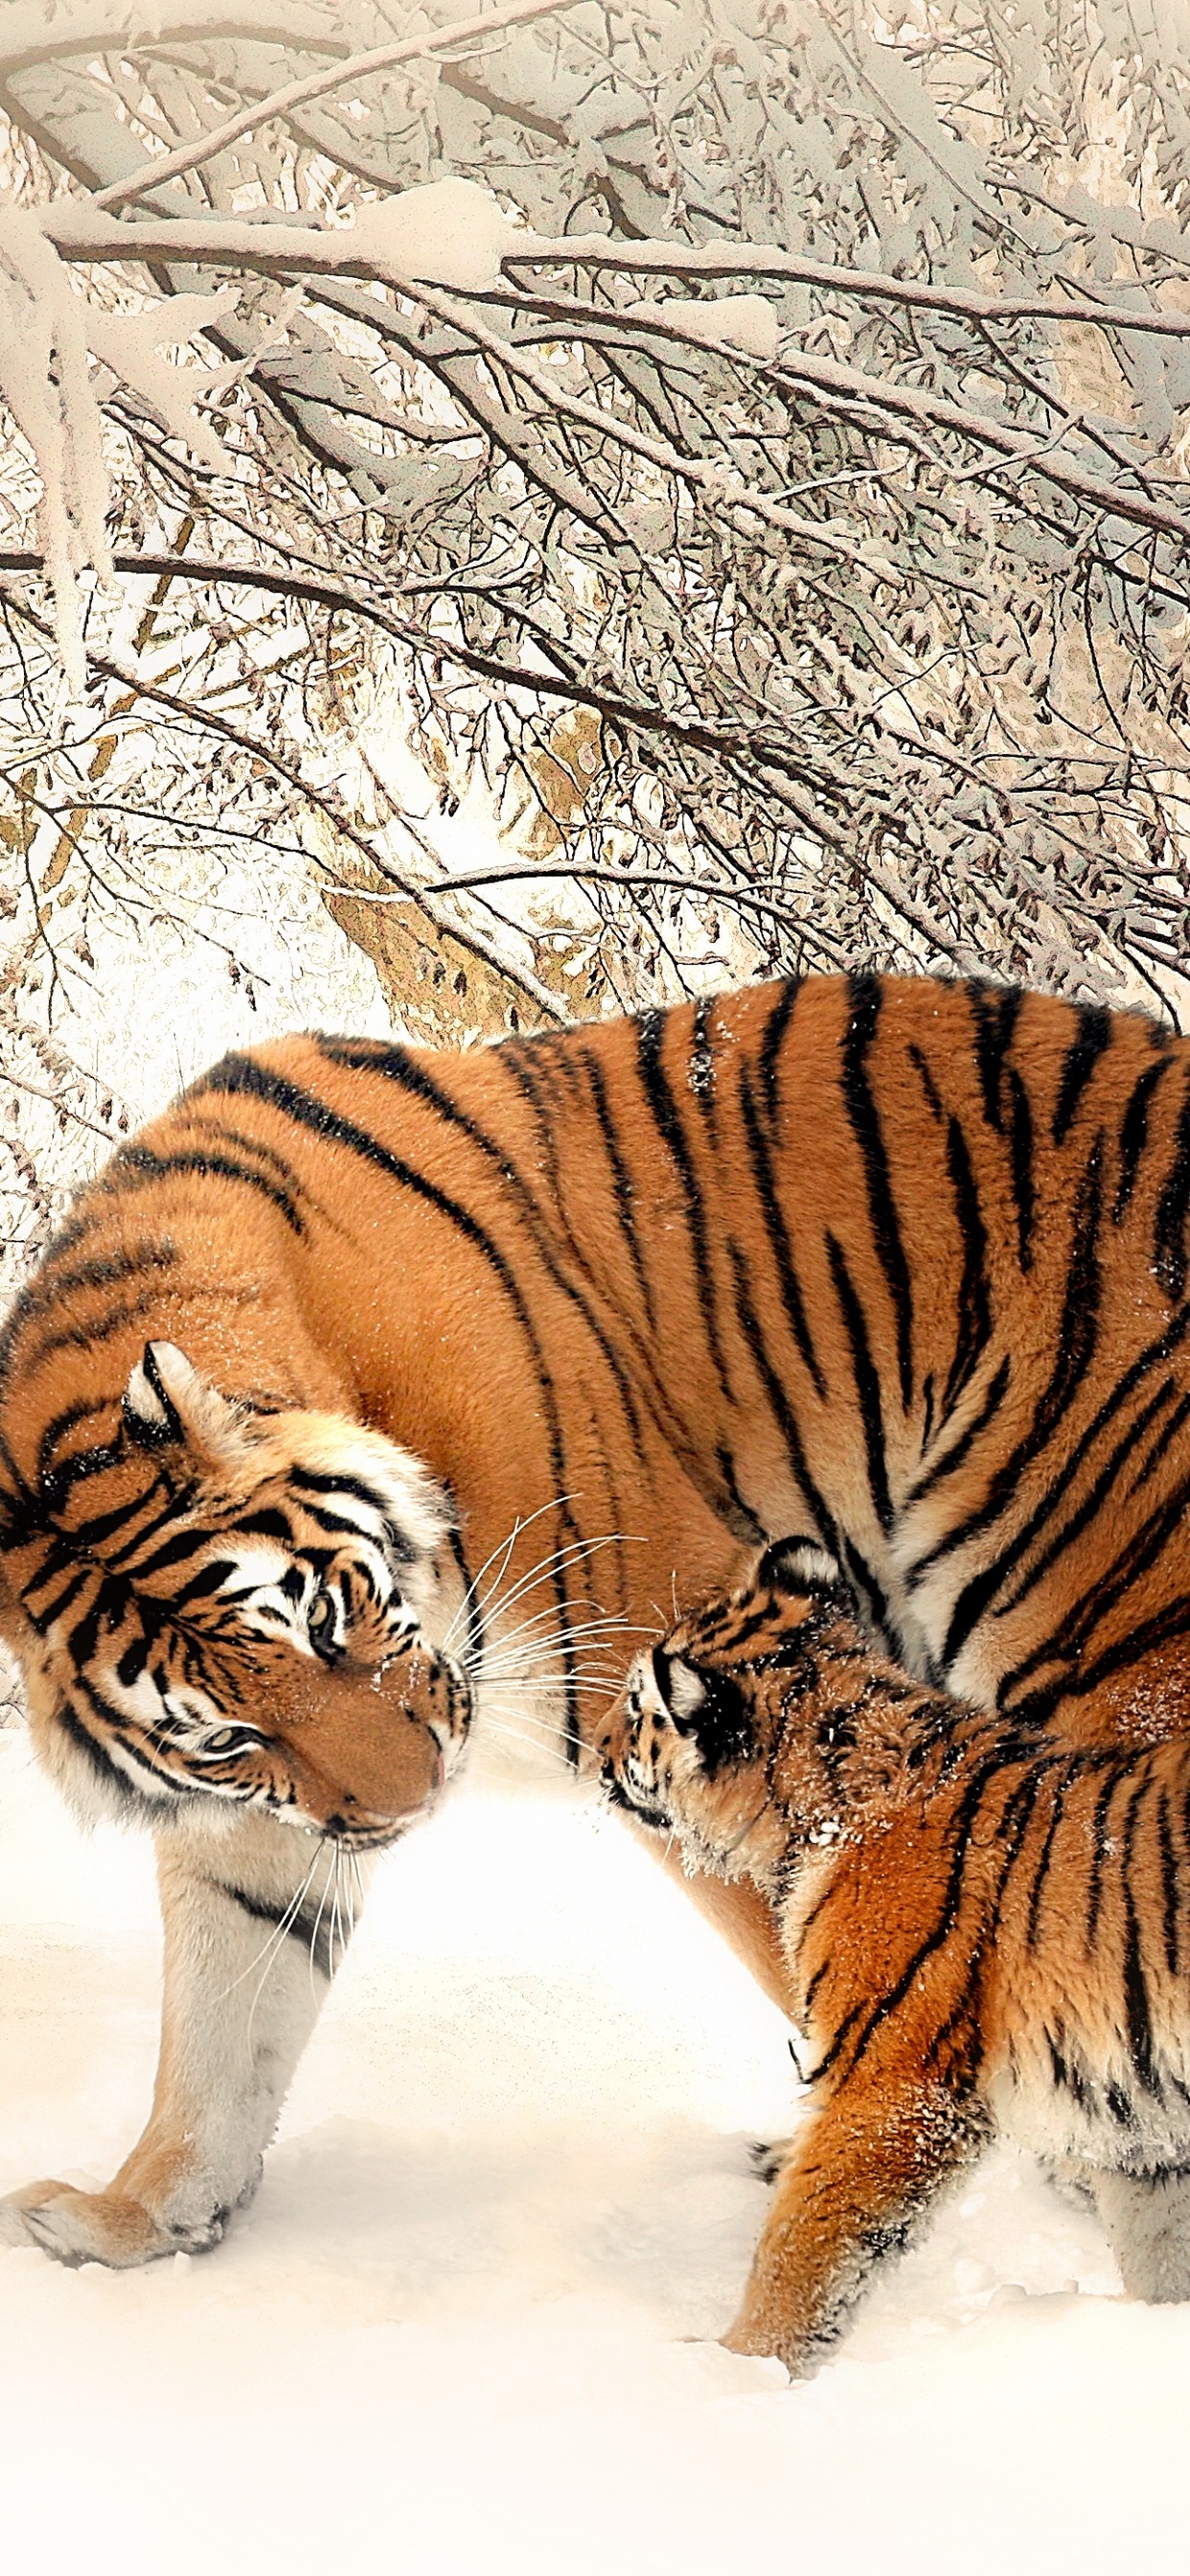 Tiger, Der Tagsüber Auf Schneebedecktem Boden Läuft. Wallpaper in 1242x2688 Resolution